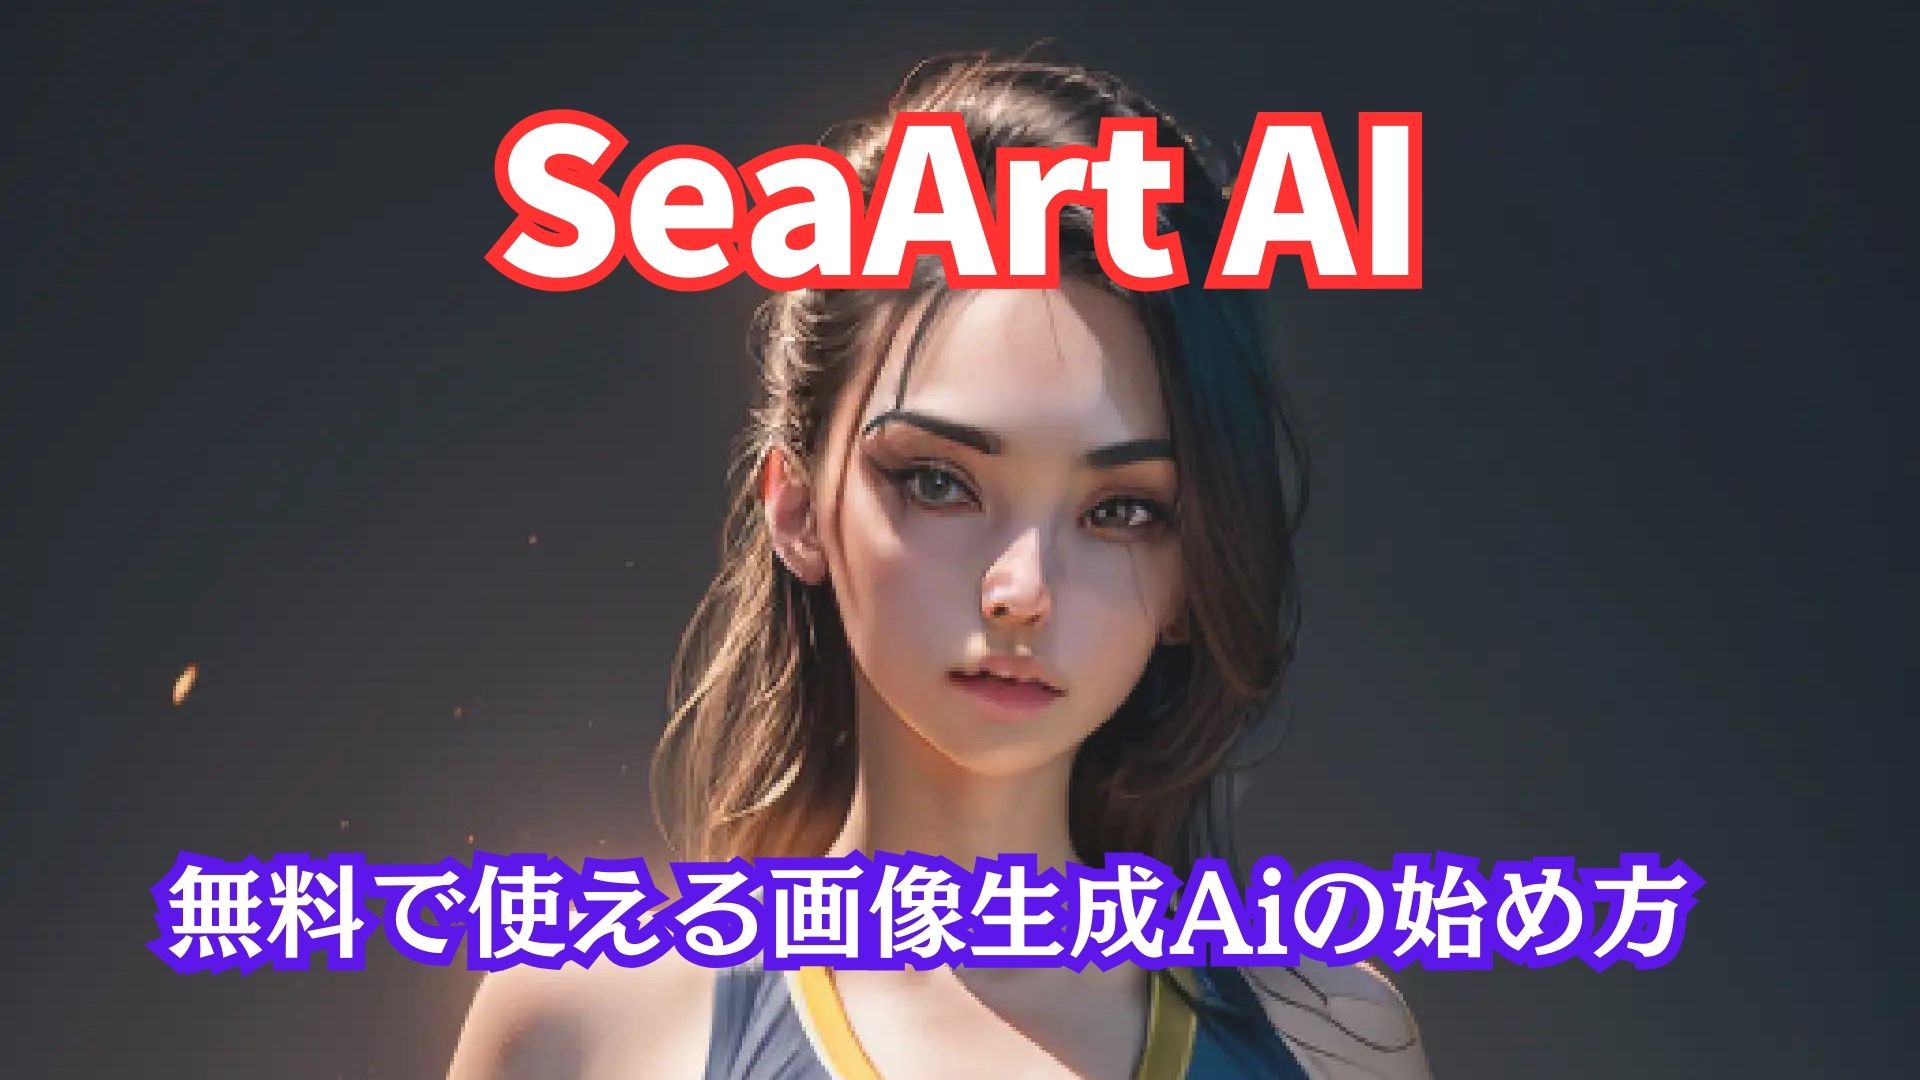 SeaArt Ai